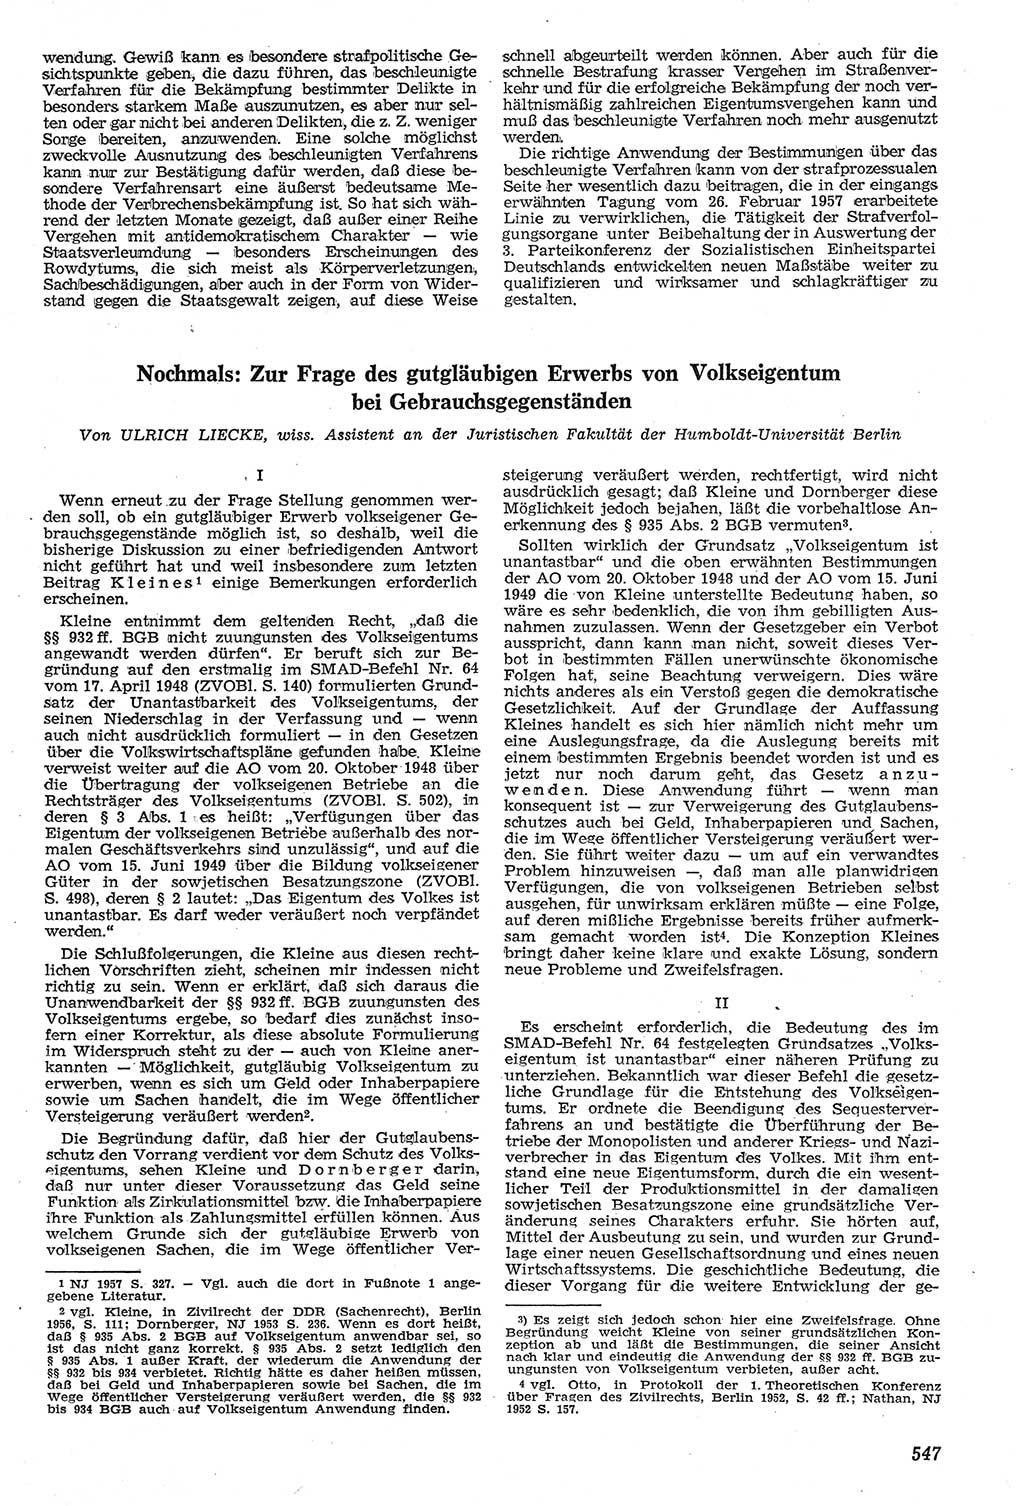 Neue Justiz (NJ), Zeitschrift für Recht und Rechtswissenschaft [Deutsche Demokratische Republik (DDR)], 11. Jahrgang 1957, Seite 547 (NJ DDR 1957, S. 547)